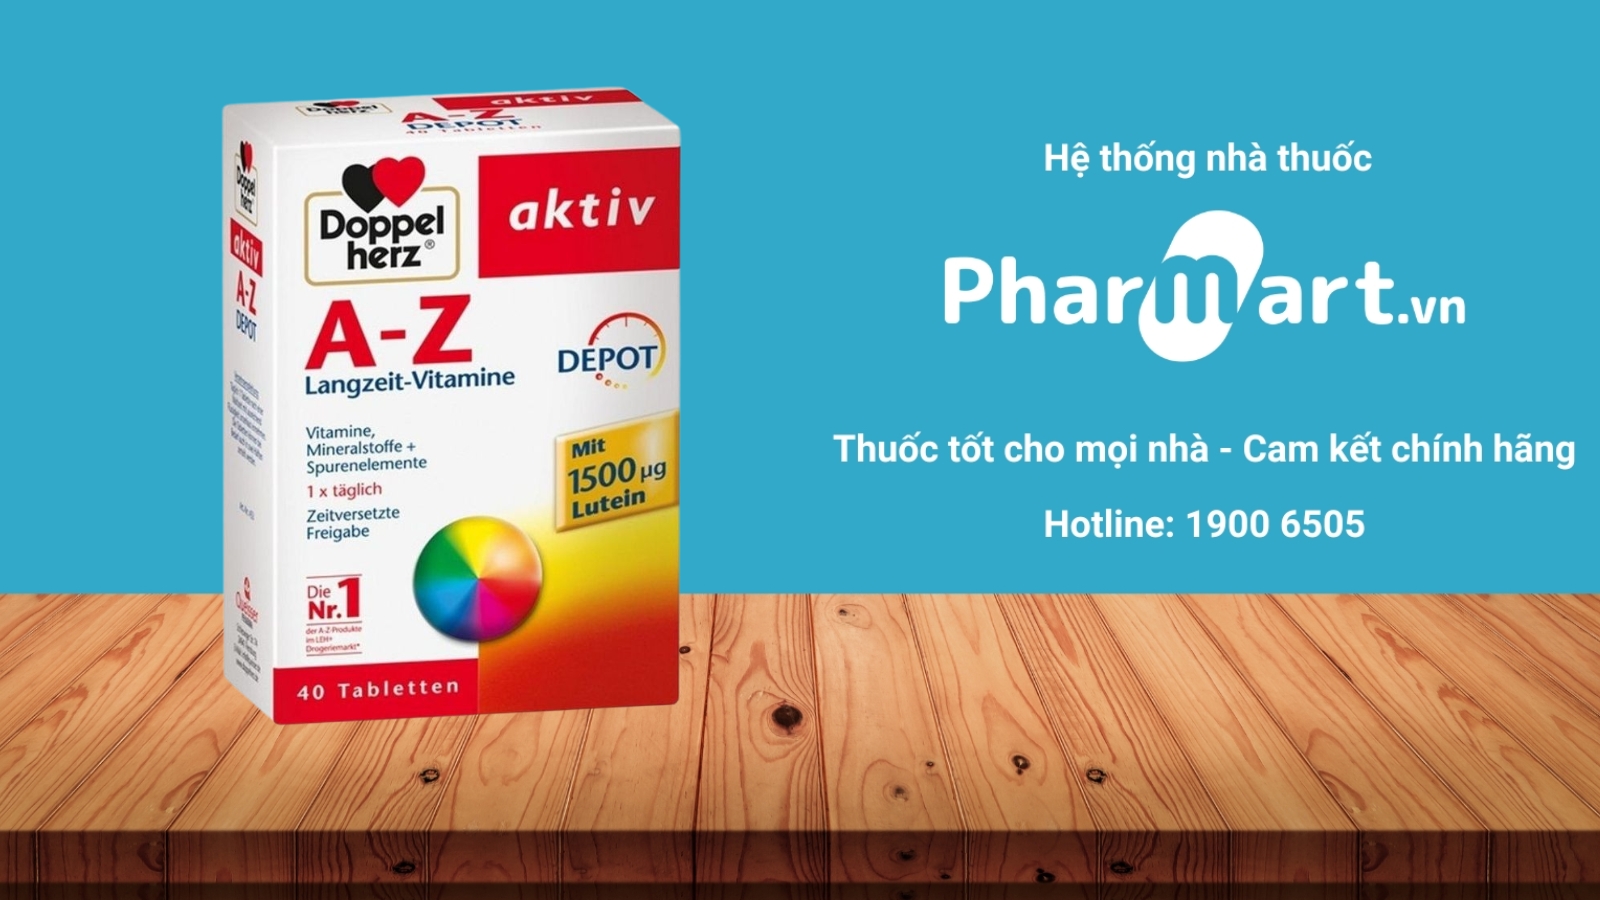 Mua ngay Vitamin tổng hợp Aktiv chính hãng tại Pharmart.vn